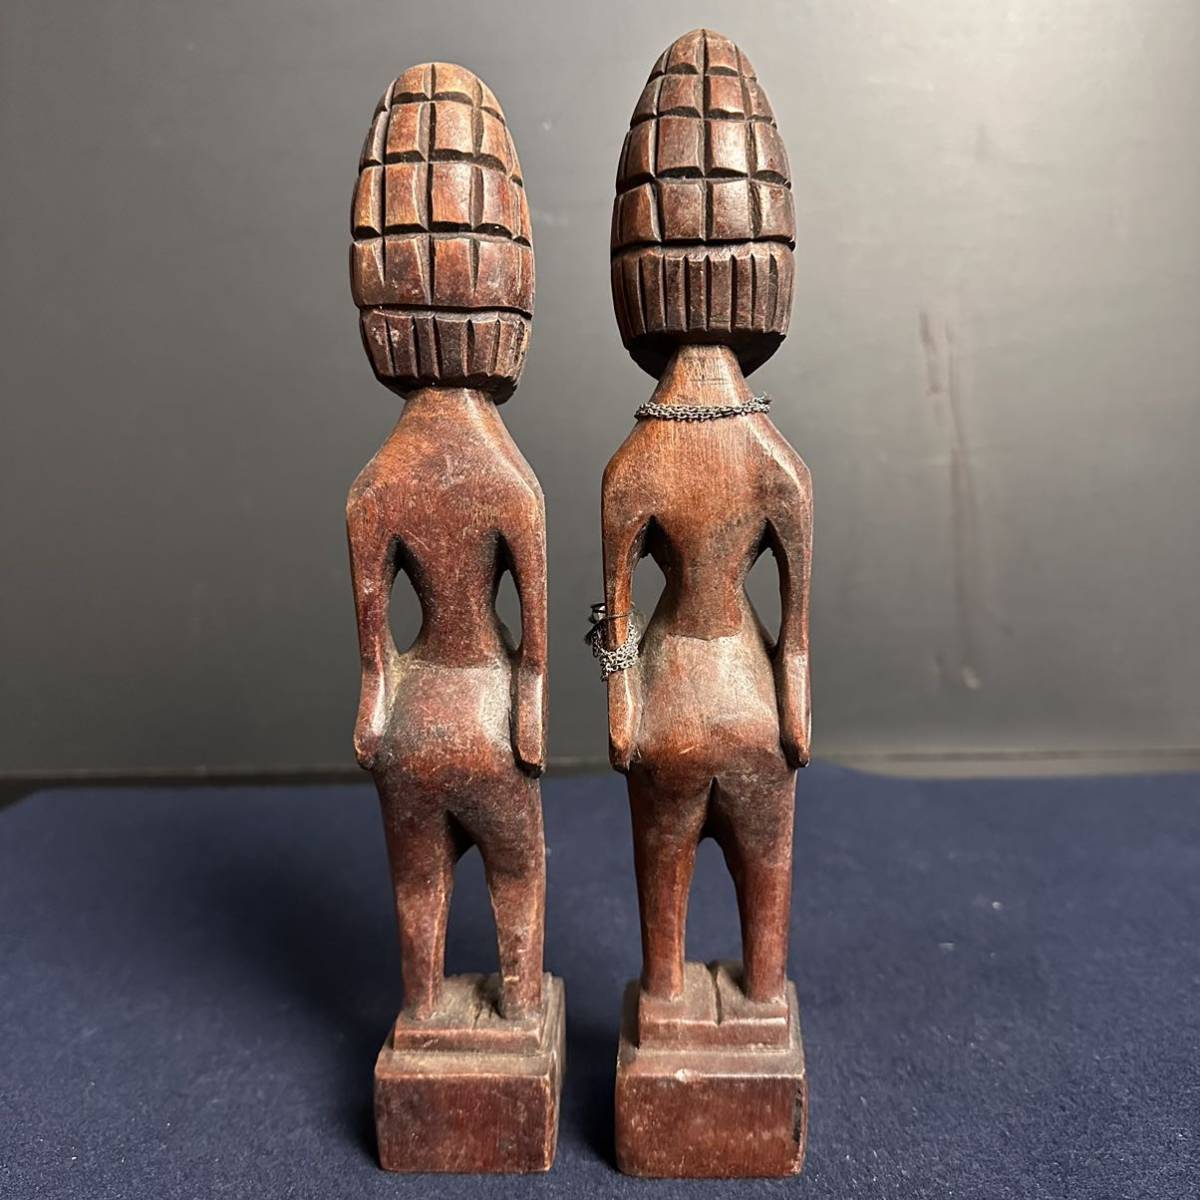 [KJ162] アフリカ 民族工芸 木彫 夫婦像 一対 置物 インテリア オブジェ 魔除け アフリカ民芸 アフリカン雑貨_画像6